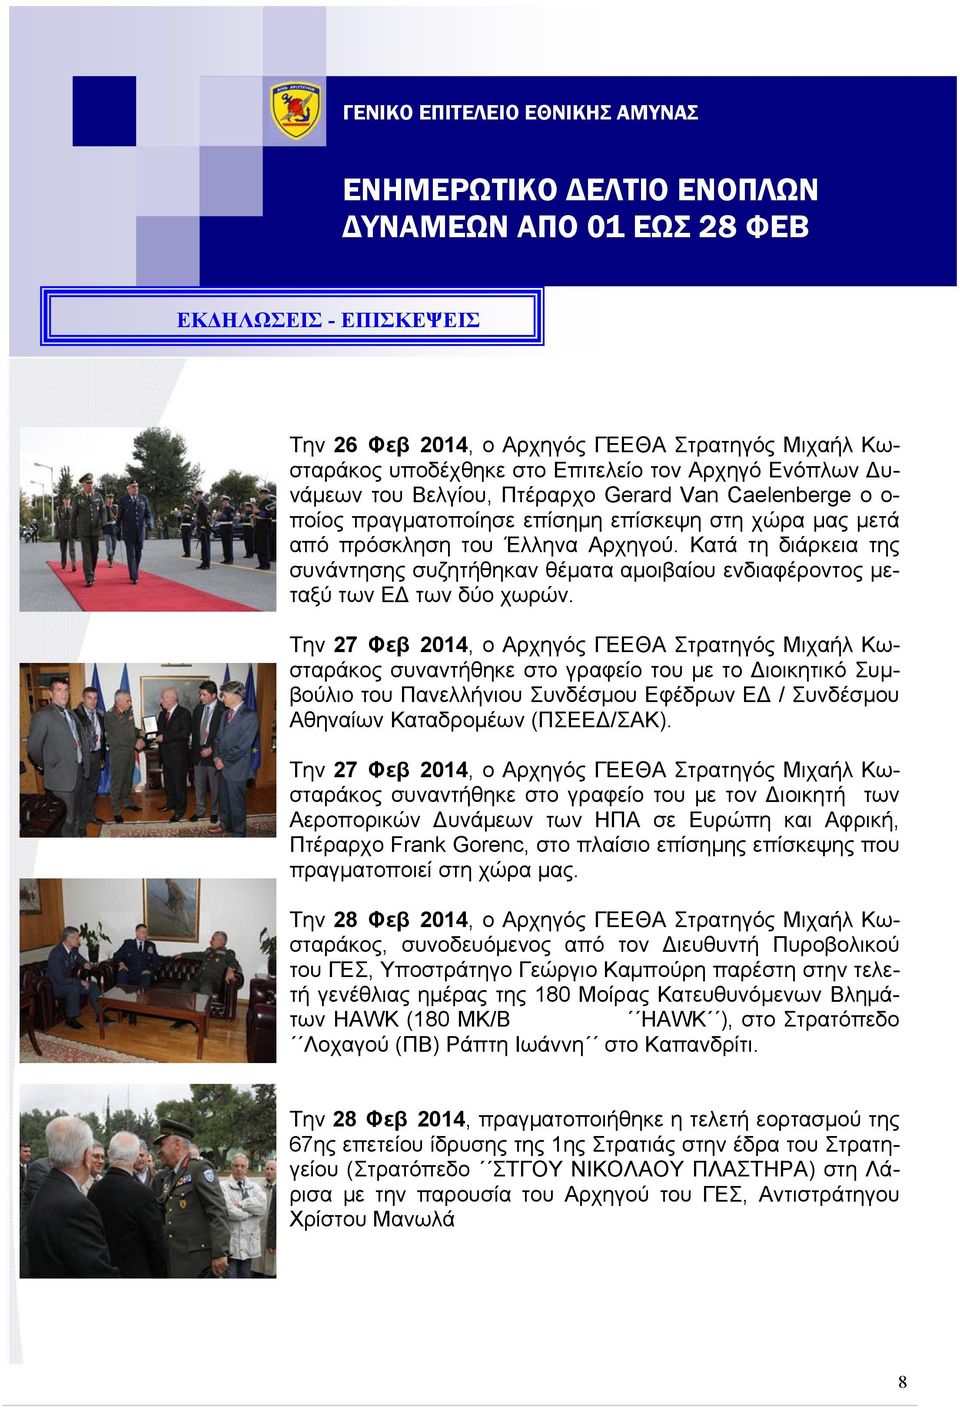 Την 27 Φεβ 2014, ο Αρχηγός ΓΕΕΘΑ Στρατηγός Μιχαήλ Κωσταράκος συναντήθηκε στο γραφείο του με το ιοικητικό Συμβούλιο του Πανελλήνιου Συνδέσμου Εφέδρων Ε / Συνδέσμου Αθηναίων Καταδρομέων (ΠΣΕΕ /ΣΑΚ).